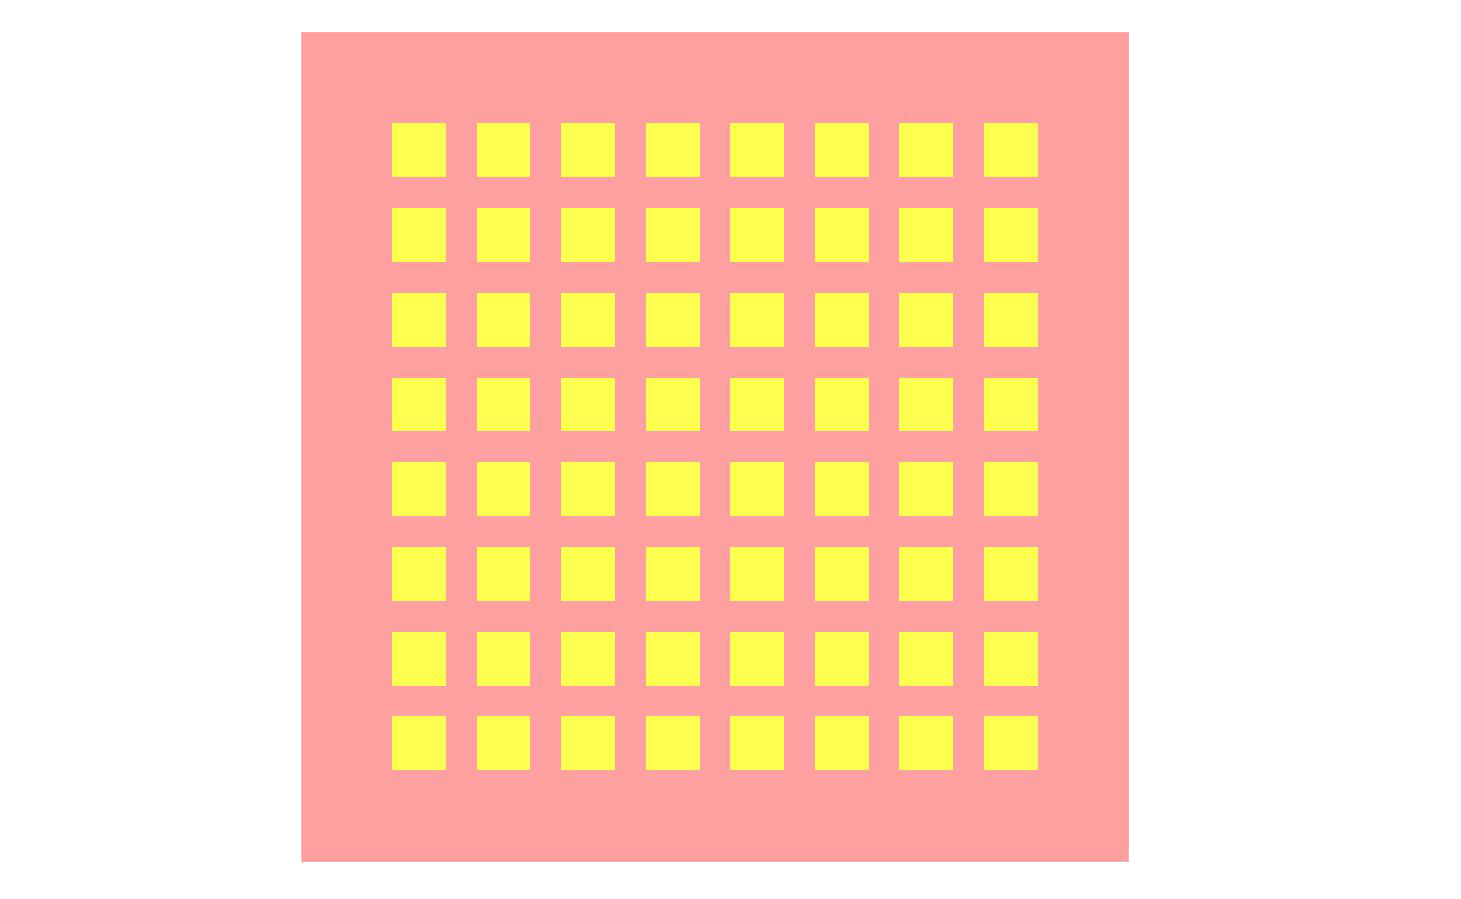 图 1：天线几何形状俯视图，显示 8x8 阵列贴片的布局。